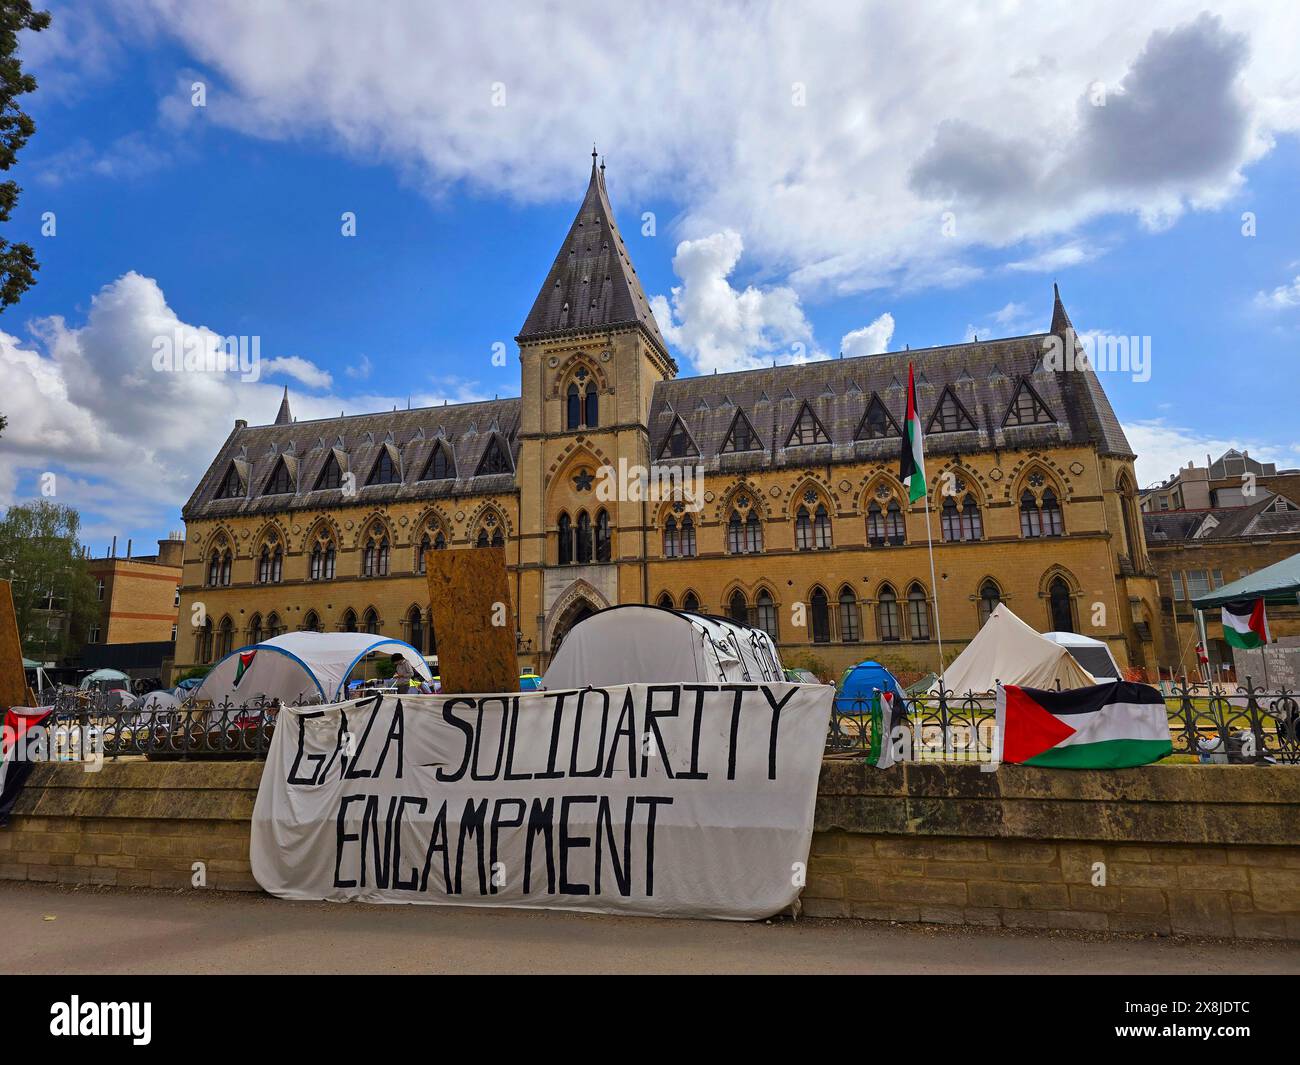 La polizia ha interrotto una protesta pro-palestinese a Oxford dopo che i manifestanti studenteschi hanno organizzato un sit-in pacifico in un edificio di uffici universitari. La manifestazione faceva parte delle proteste in corso contro la guerra a Gaza da parte di studenti in tutti gli Stati Uniti e in Europa. Londra, regno unito. Foto Stock